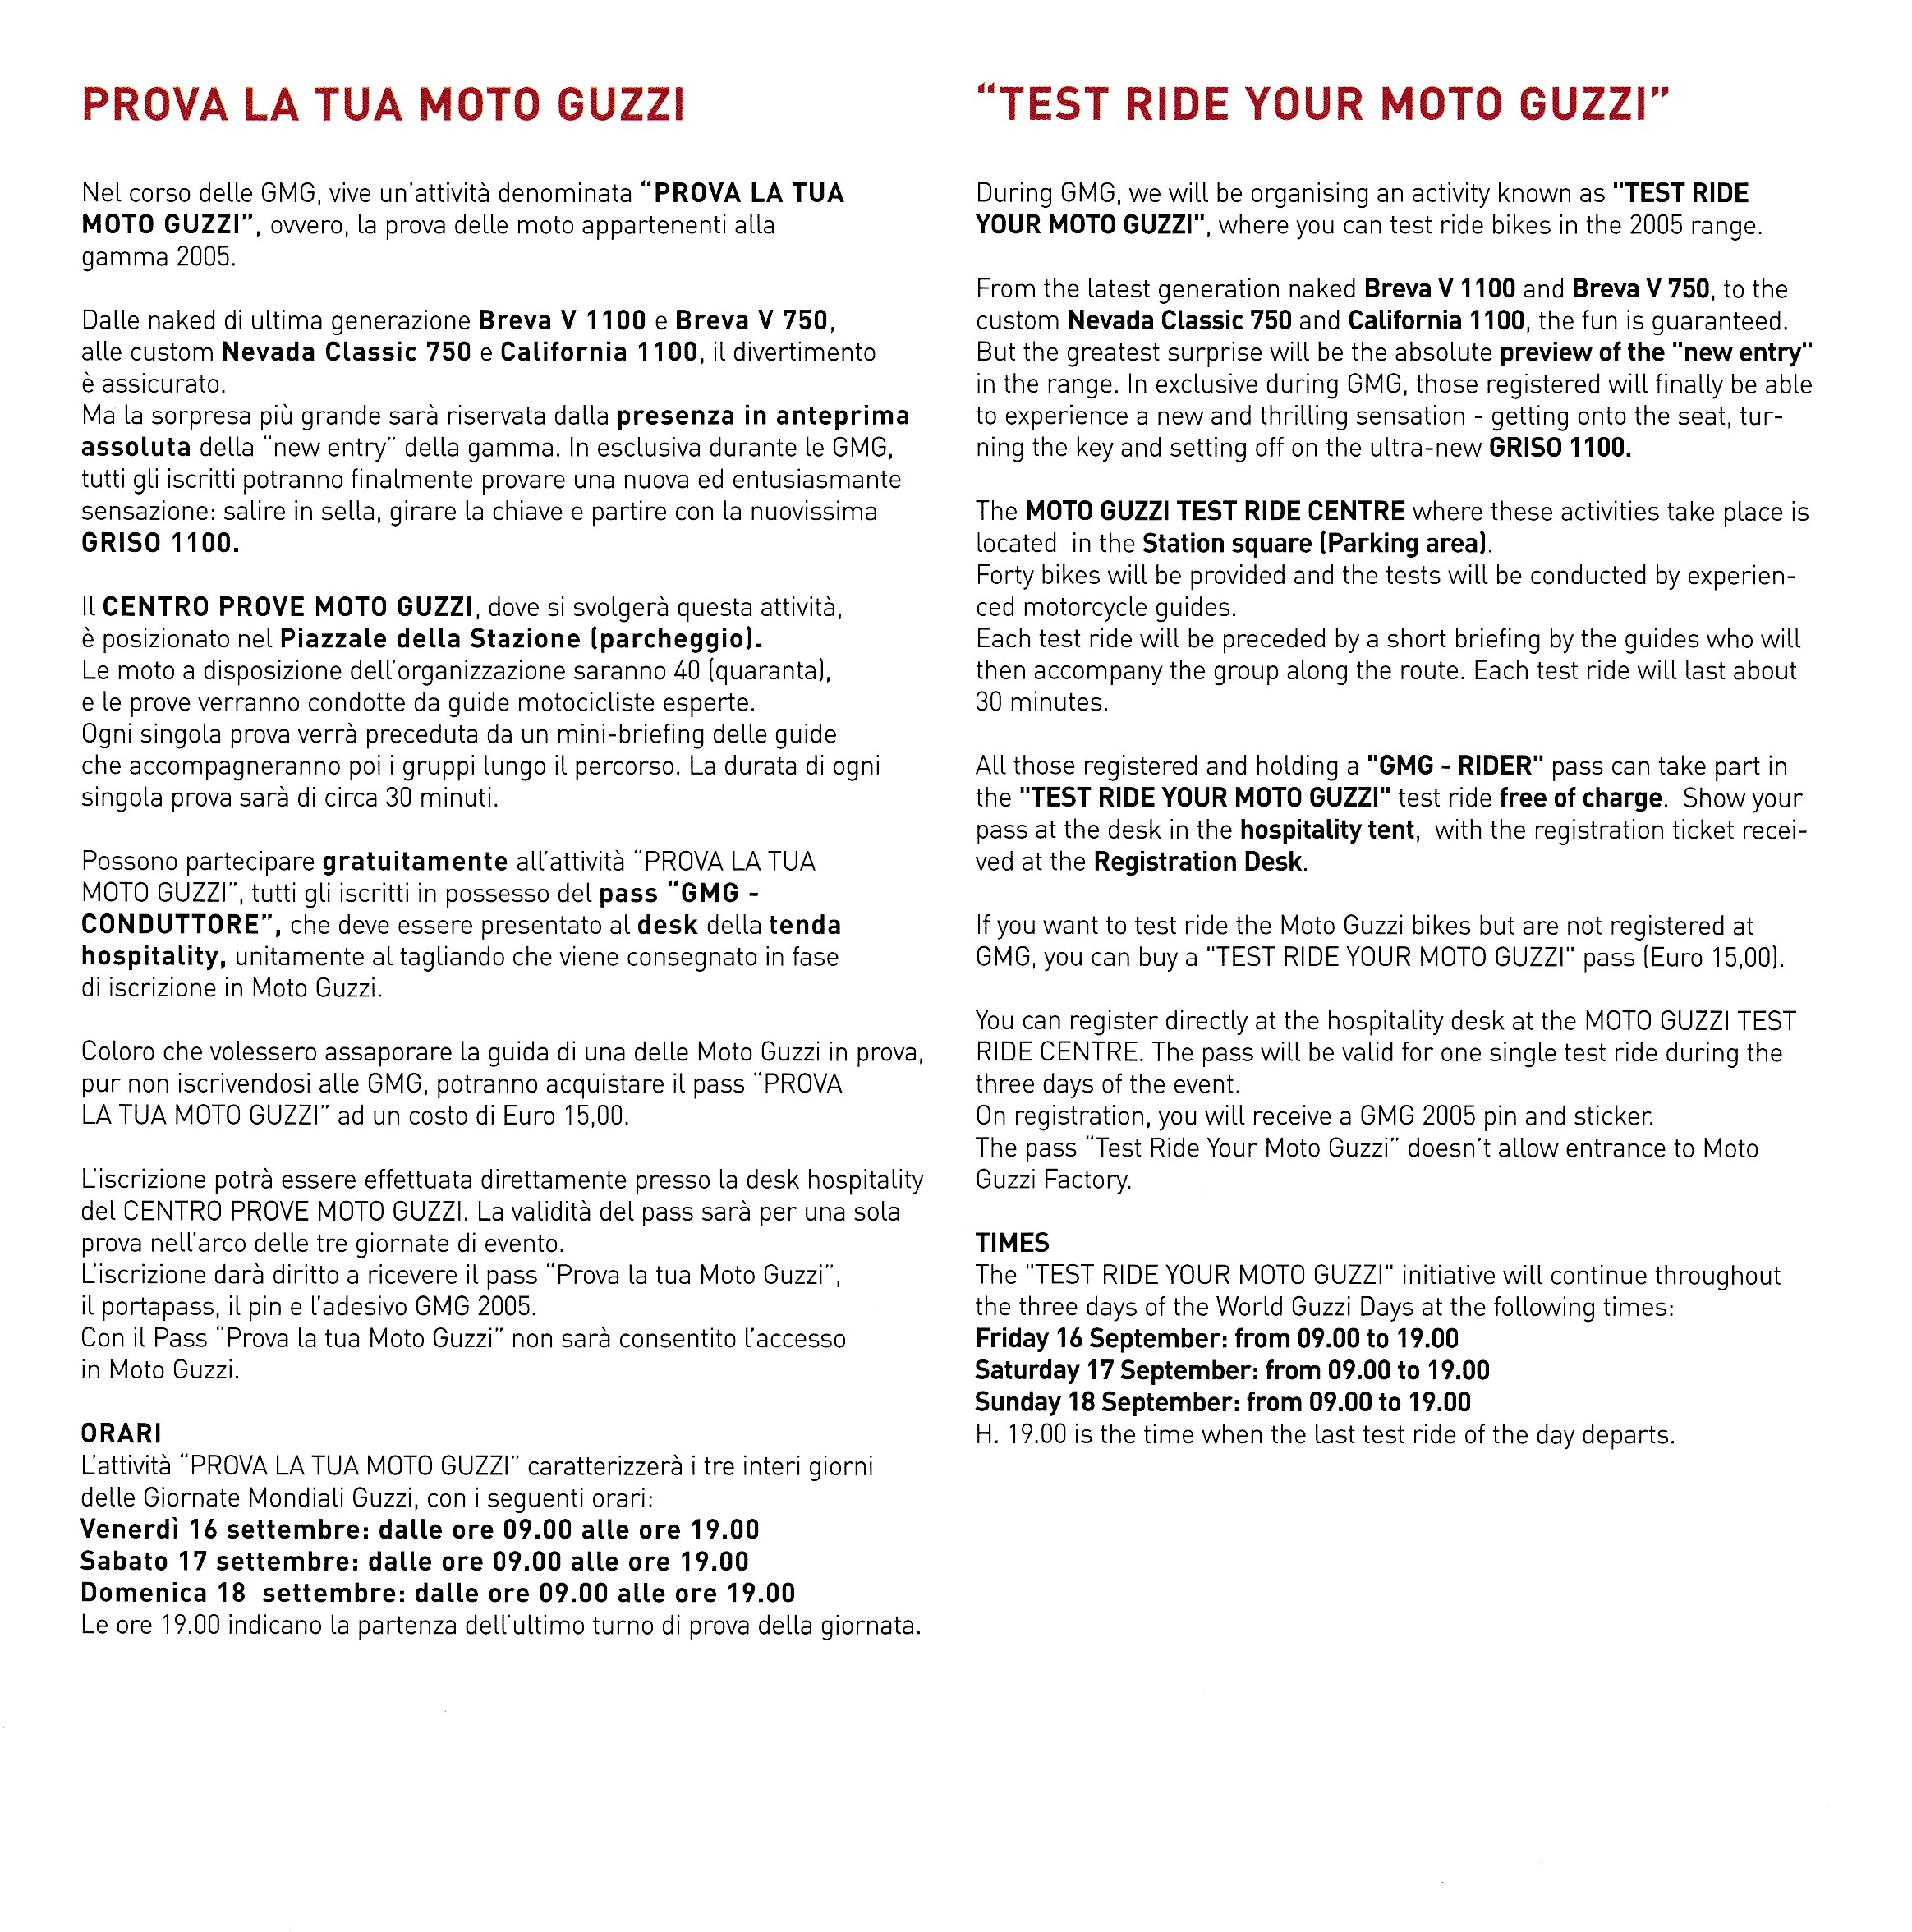 Brochure - Moto Guzzi Giornate Mondiali Guzzi (GMG) (2005)